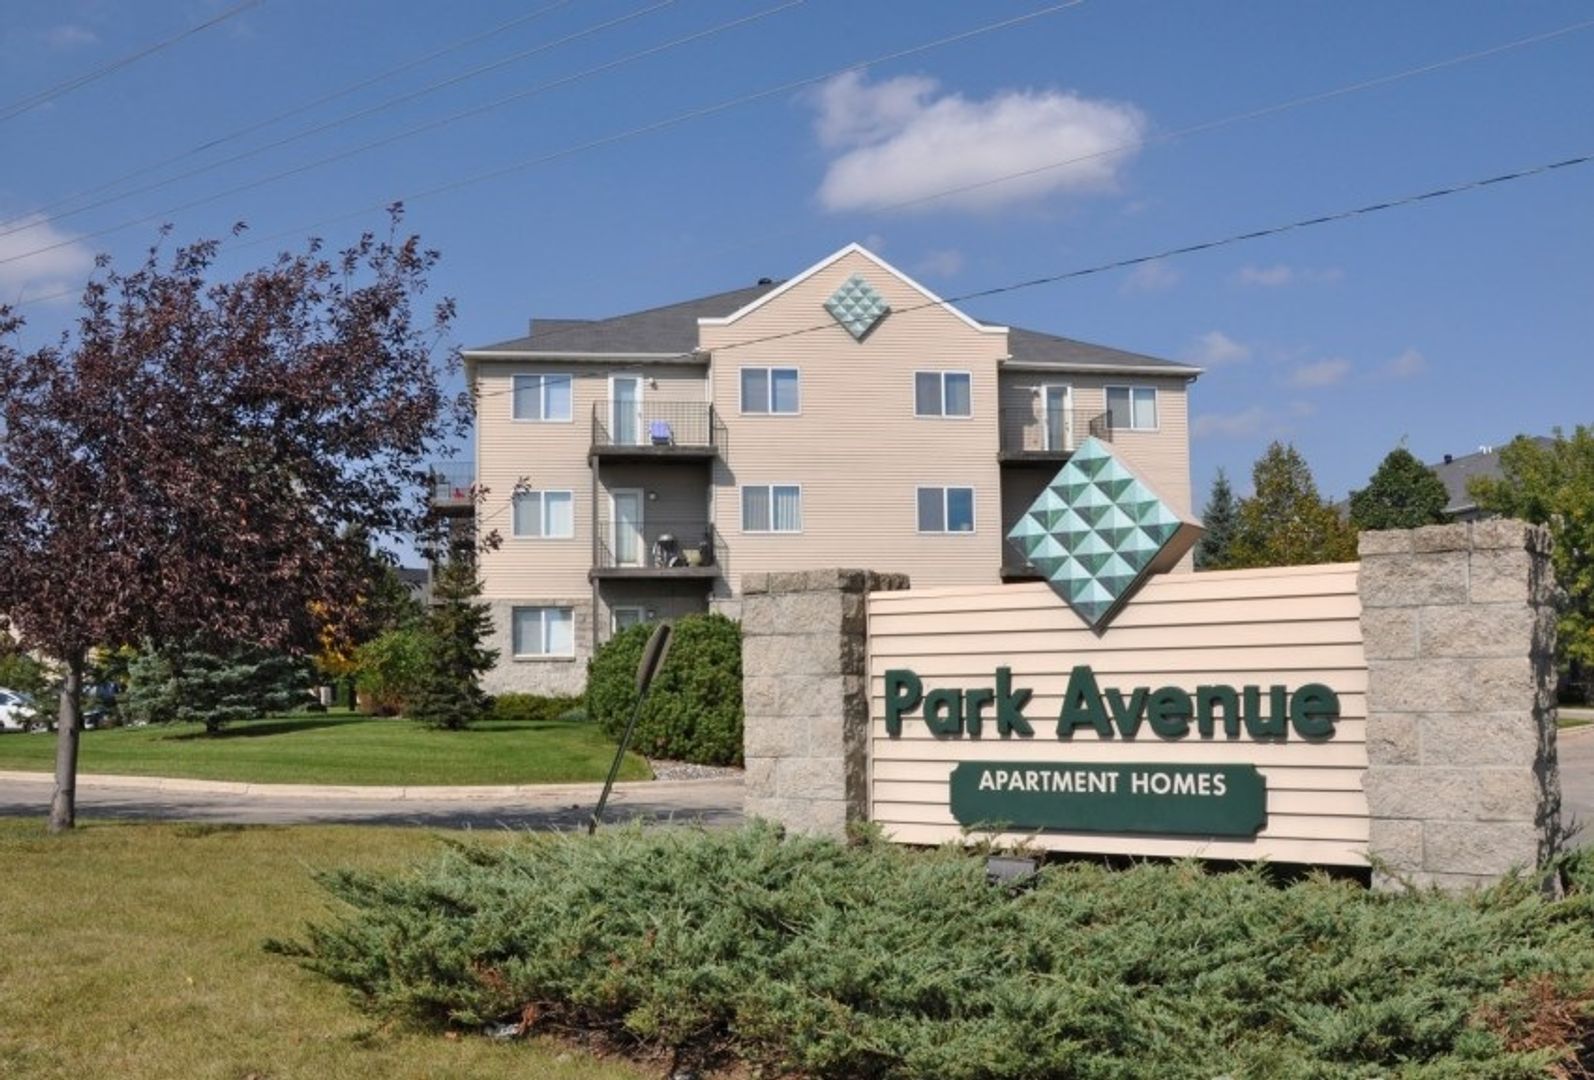 Park Avenue Apartment Homes